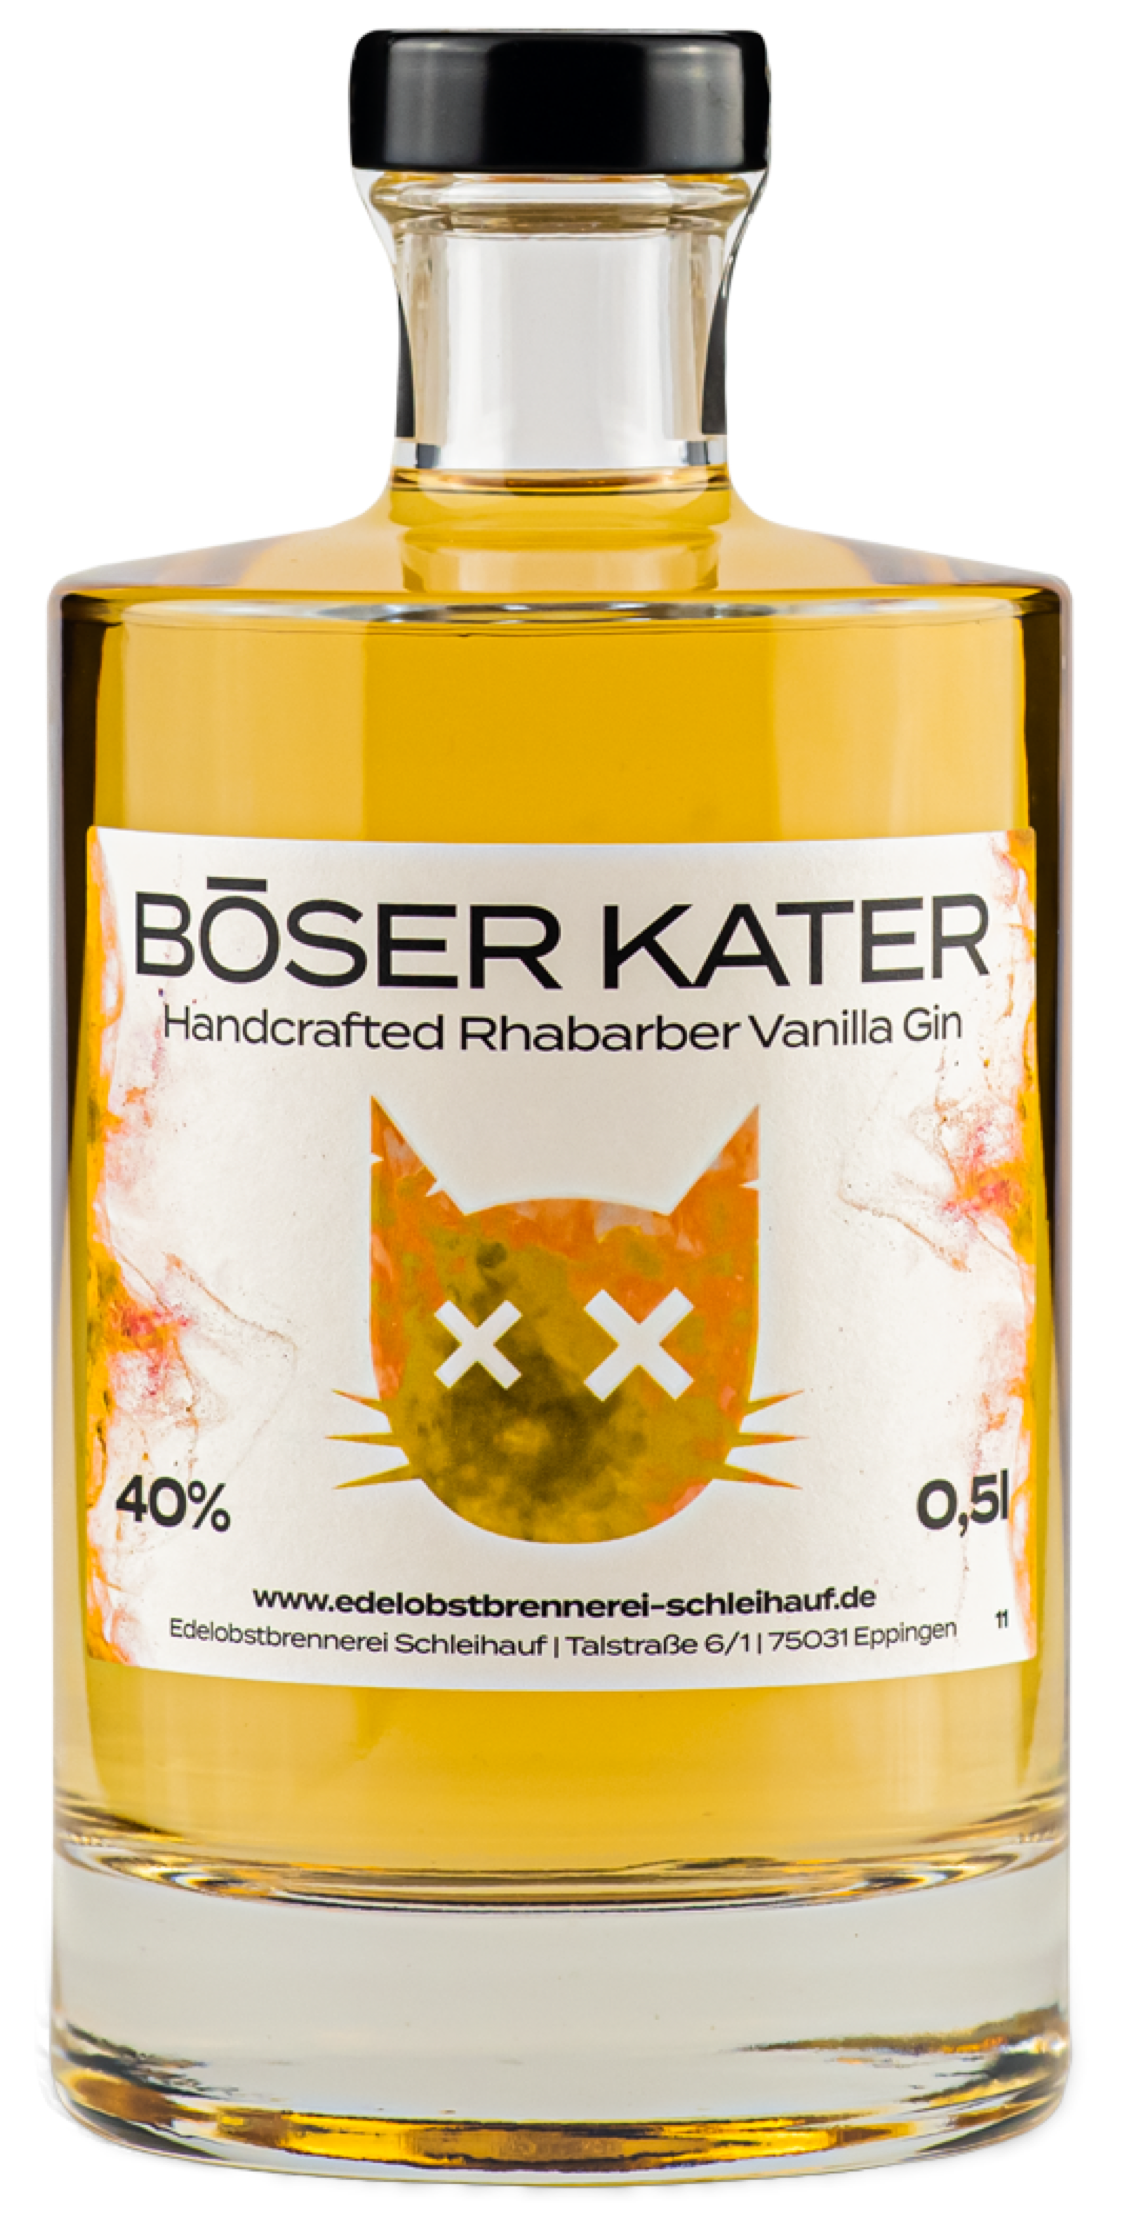 Böser Kater Handcrafted Rhabarber Vanilla Gin 40% vol. 0,5l